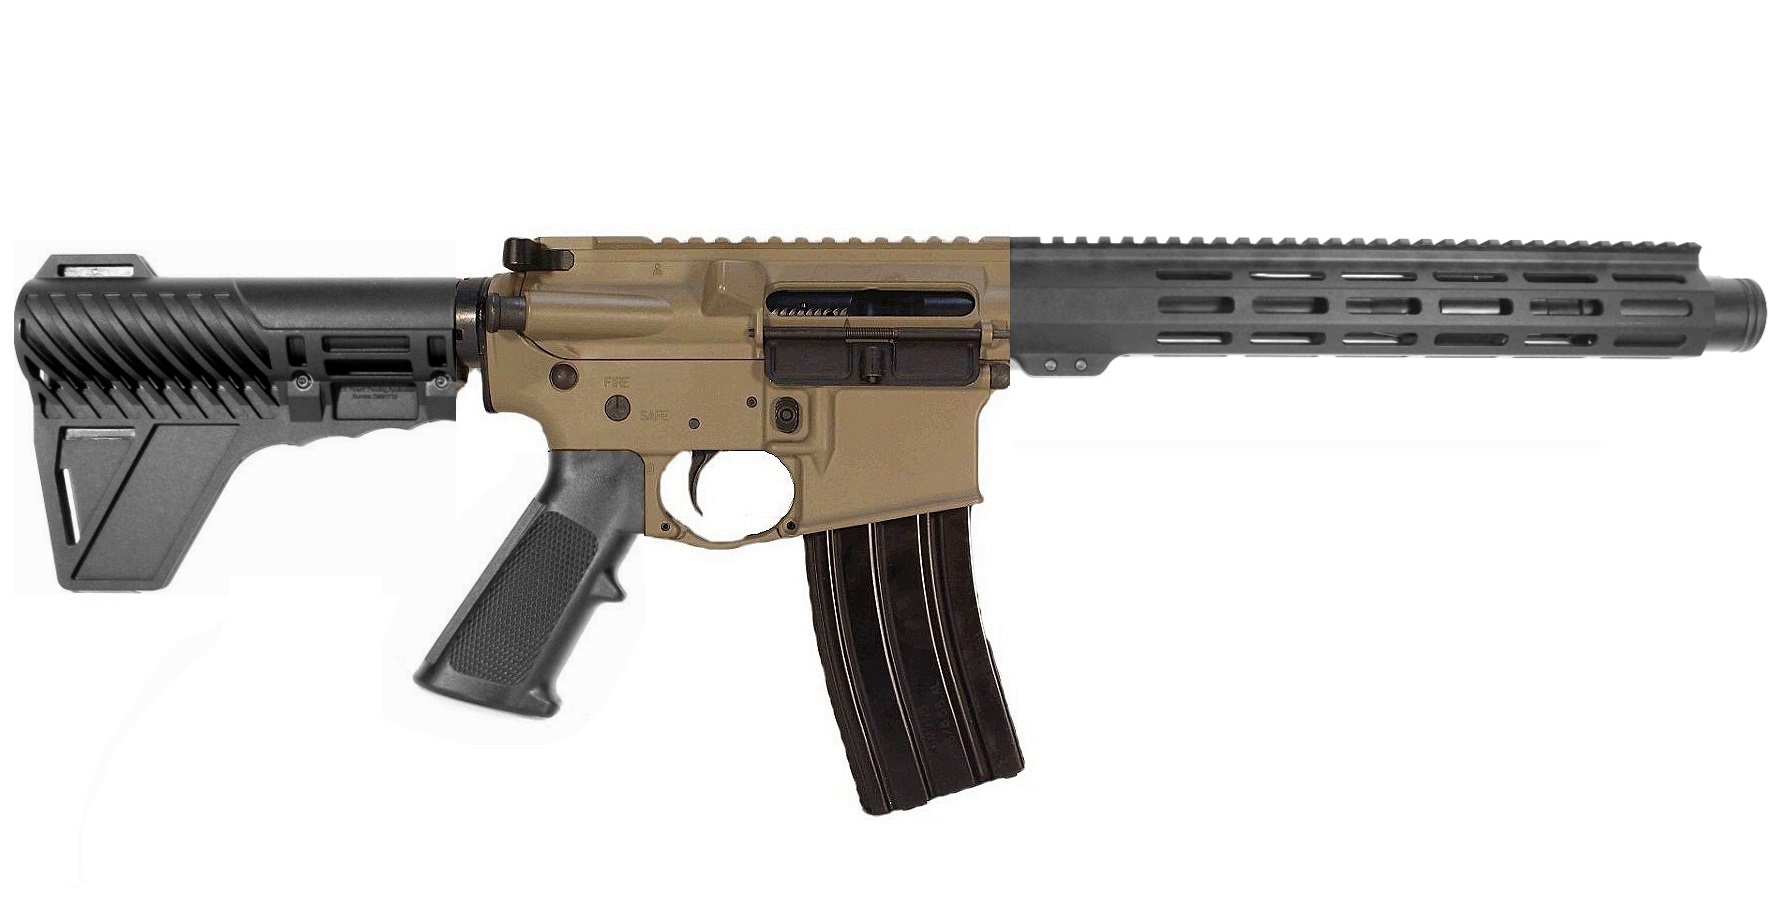 10.5 inch 5.56 NATO AR Pistol FDE/BLK 2 TONE